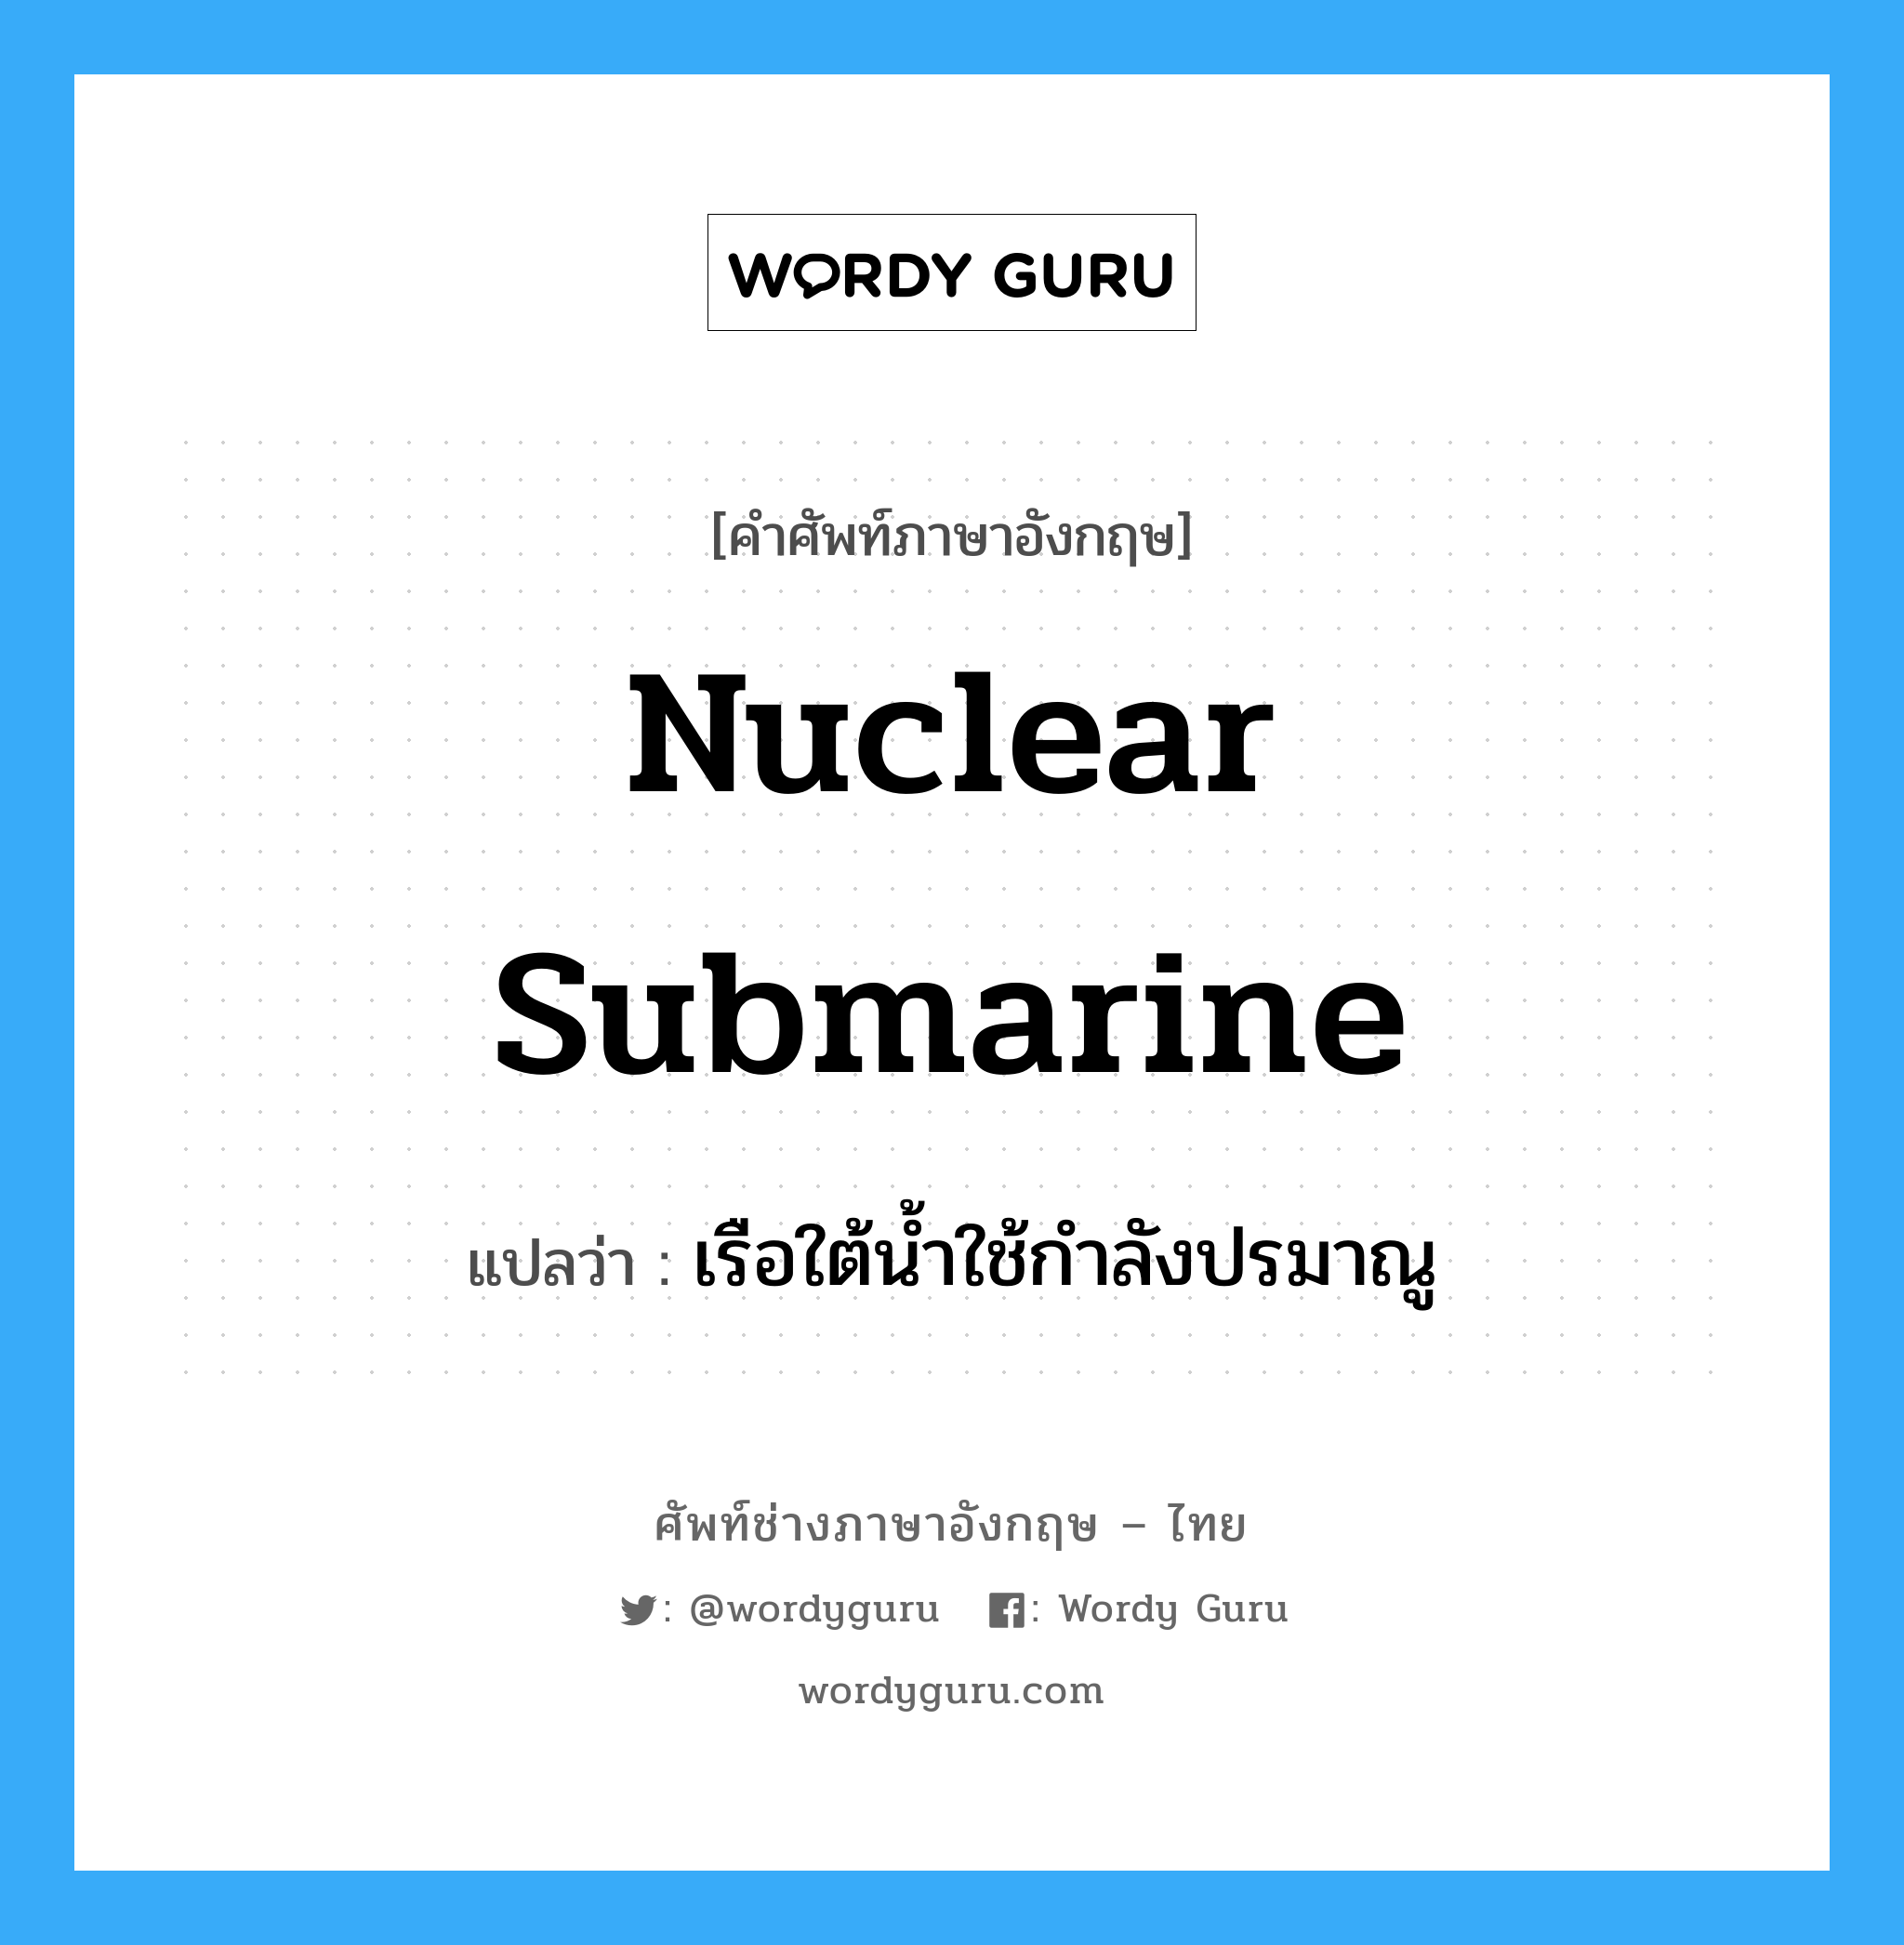 เรือใต้น้ำใช้กำลังปรมาณู ภาษาอังกฤษ?, คำศัพท์ช่างภาษาอังกฤษ - ไทย เรือใต้น้ำใช้กำลังปรมาณู คำศัพท์ภาษาอังกฤษ เรือใต้น้ำใช้กำลังปรมาณู แปลว่า nuclear submarine